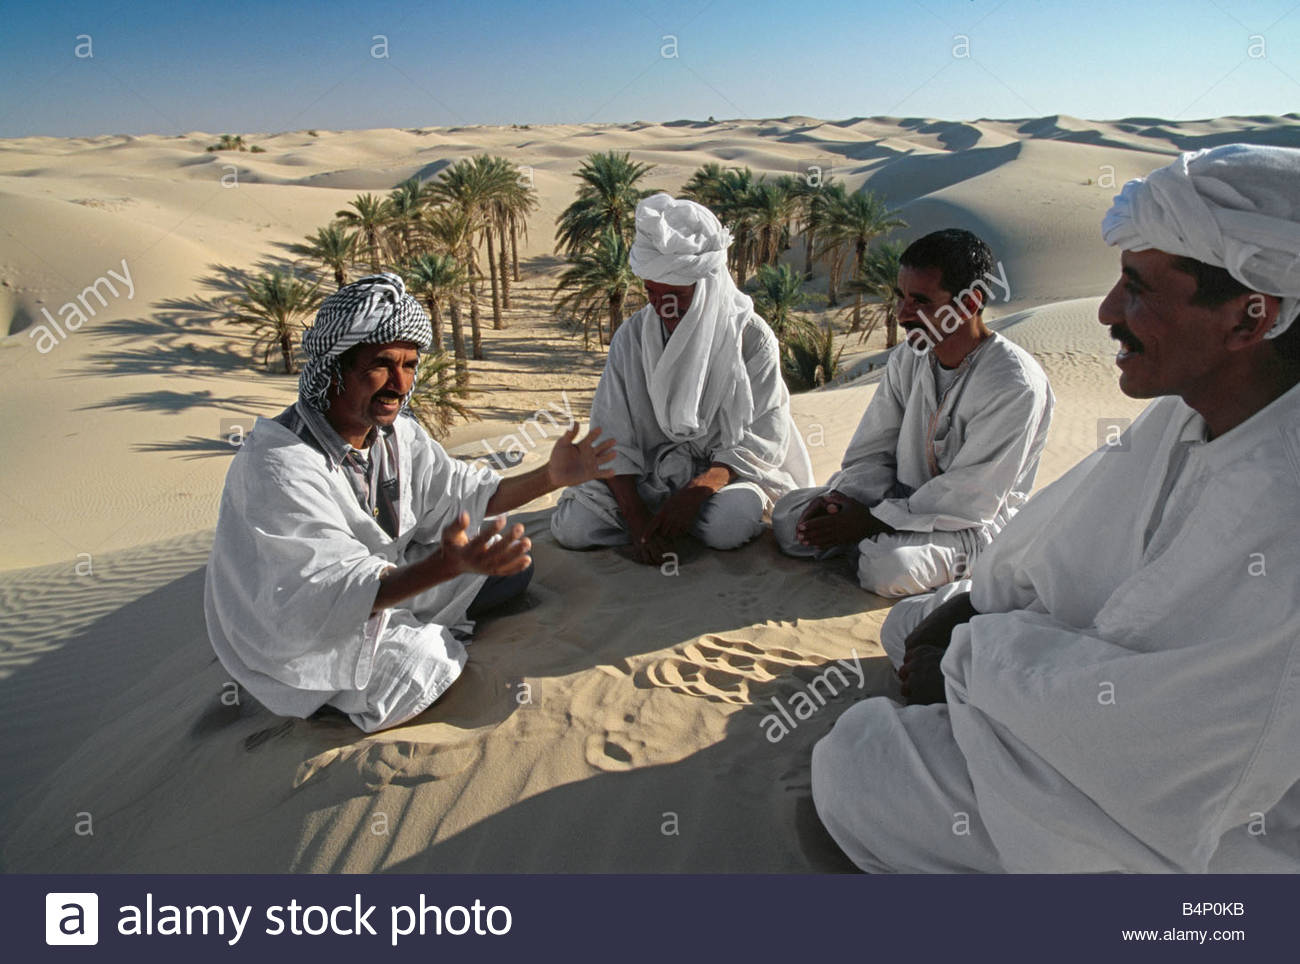 algeria-tougghourt-bedouin-men-talking-in-sand-sahara-desert-B4P0KB.jpg